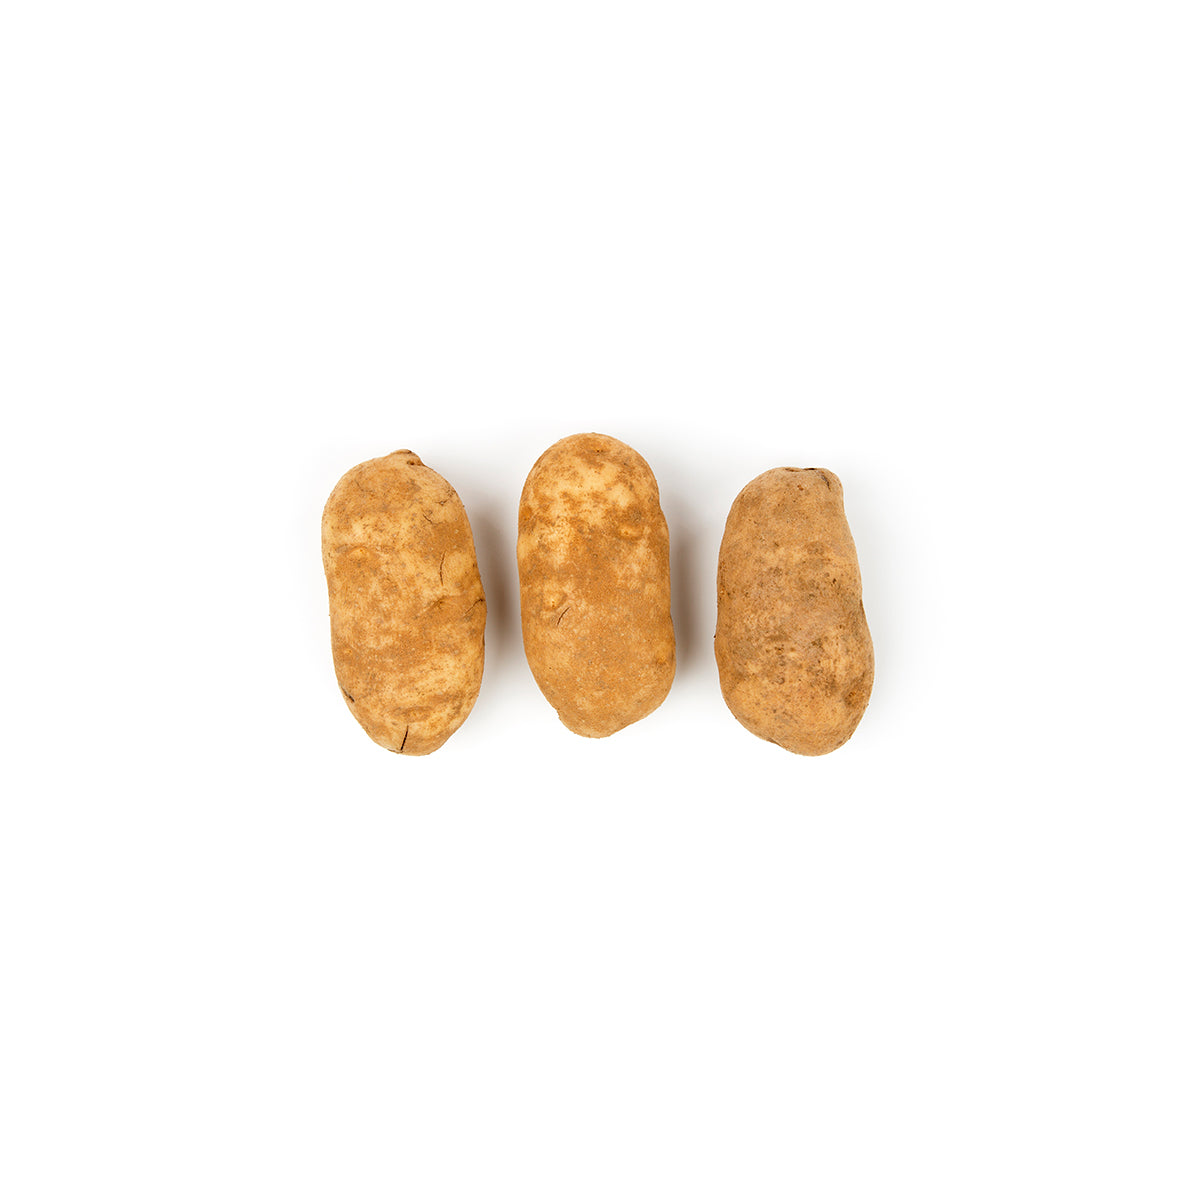 BoxNCase Russet Potatoes 5 LB